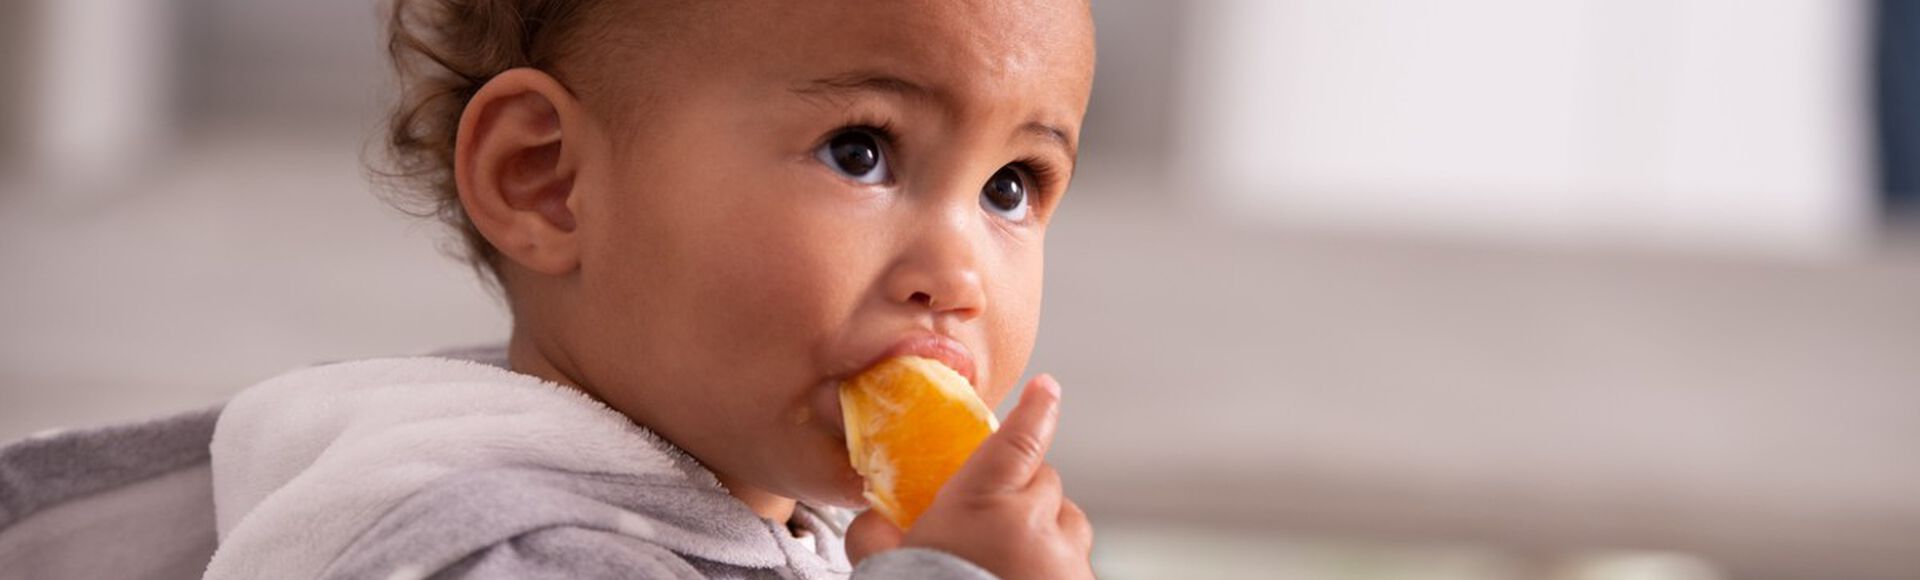 Criança sentada comendo fruta